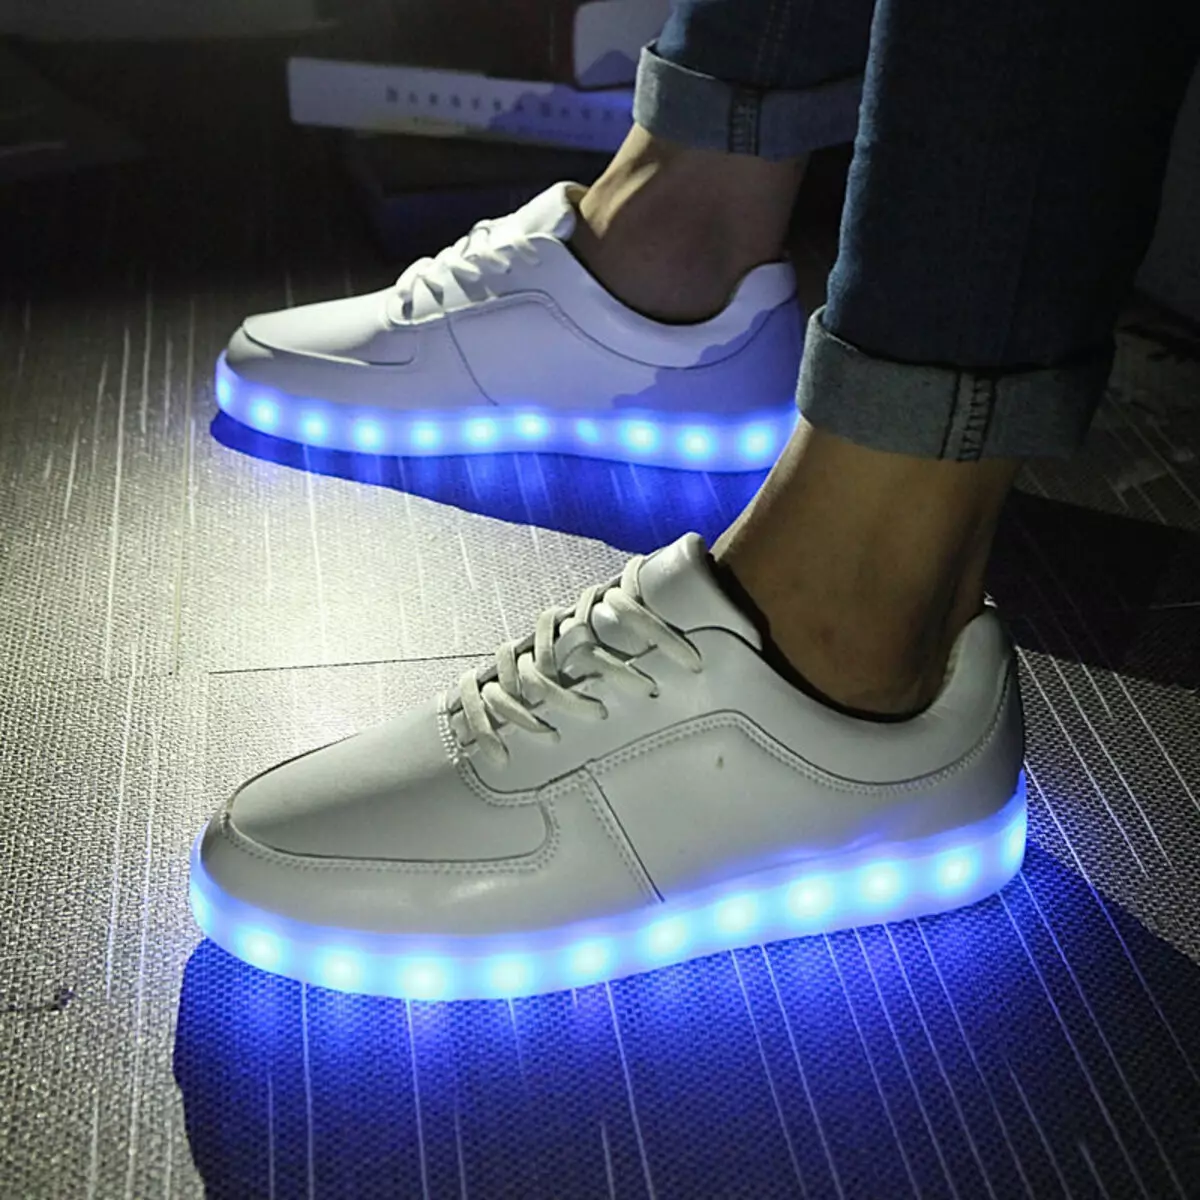 Sneakers Luminous (58 Lluniau): LED a modelau LED, faint o sneakers sydd gyda goleuadau, meintiau ac adolygiadau 2175_8